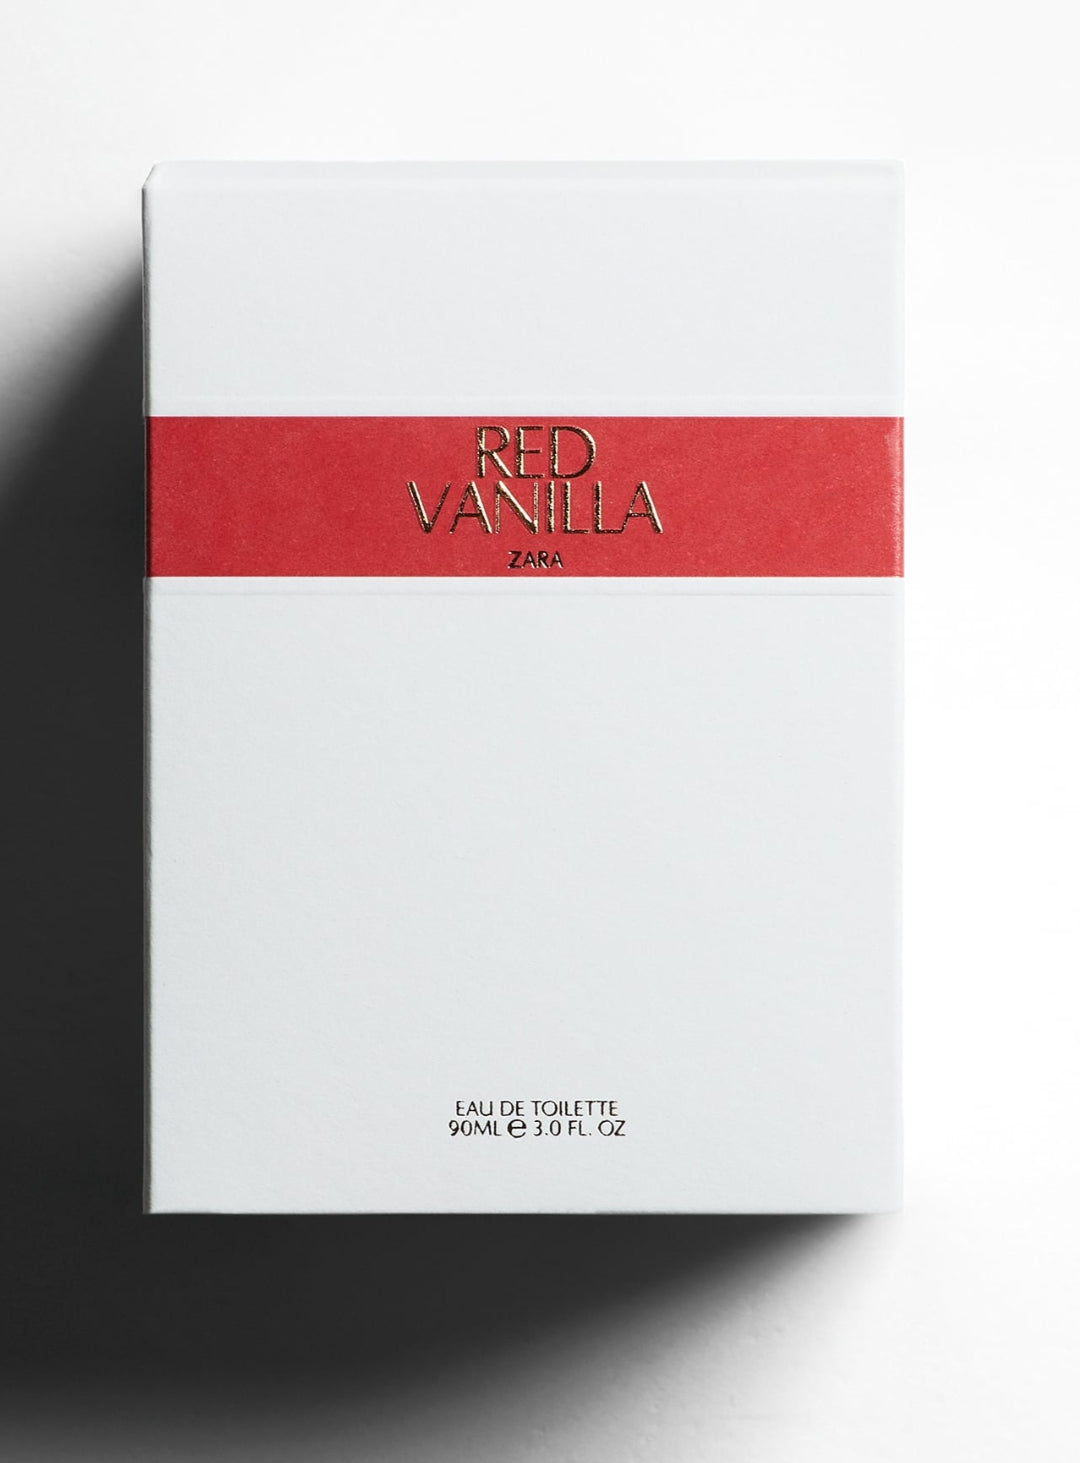 Zara Red Vanilla Perfume 90ml